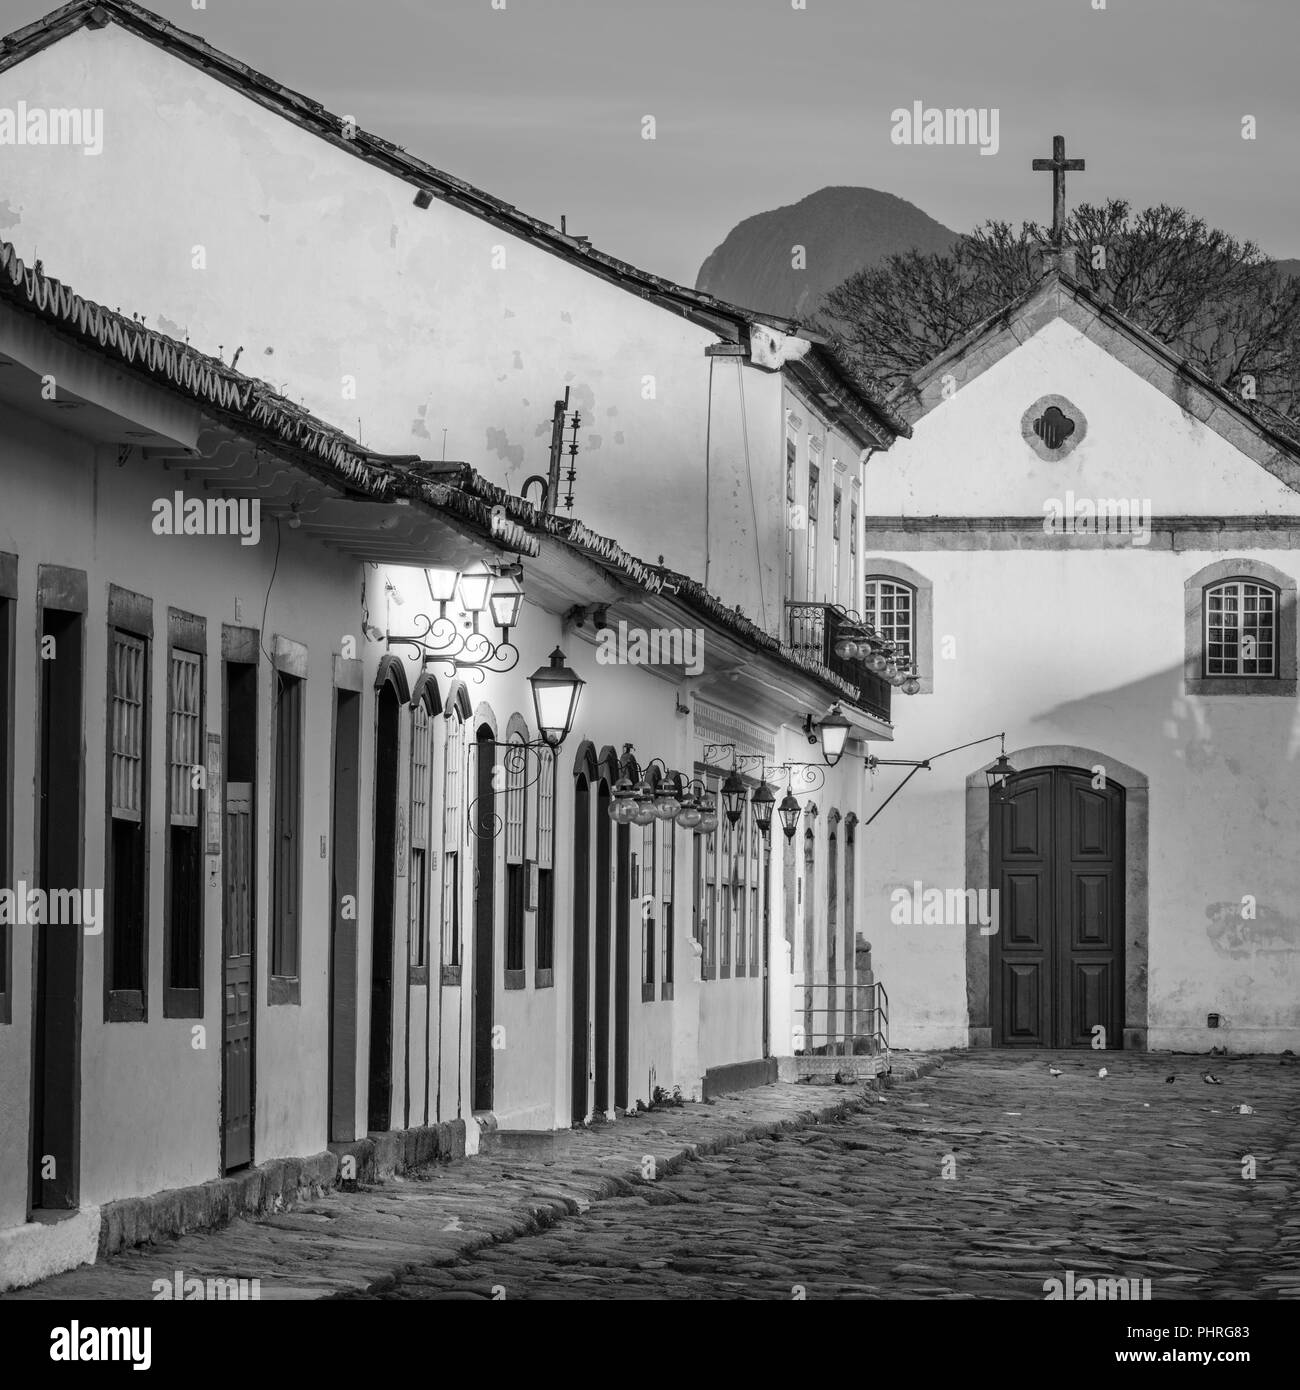 Église de Nossa Senhora do Rosário est situé dans la région de Paraty, l'une des premières villes au Brésil où les portugais ont laissé leurs empreintes digitales dans le archtectu Banque D'Images